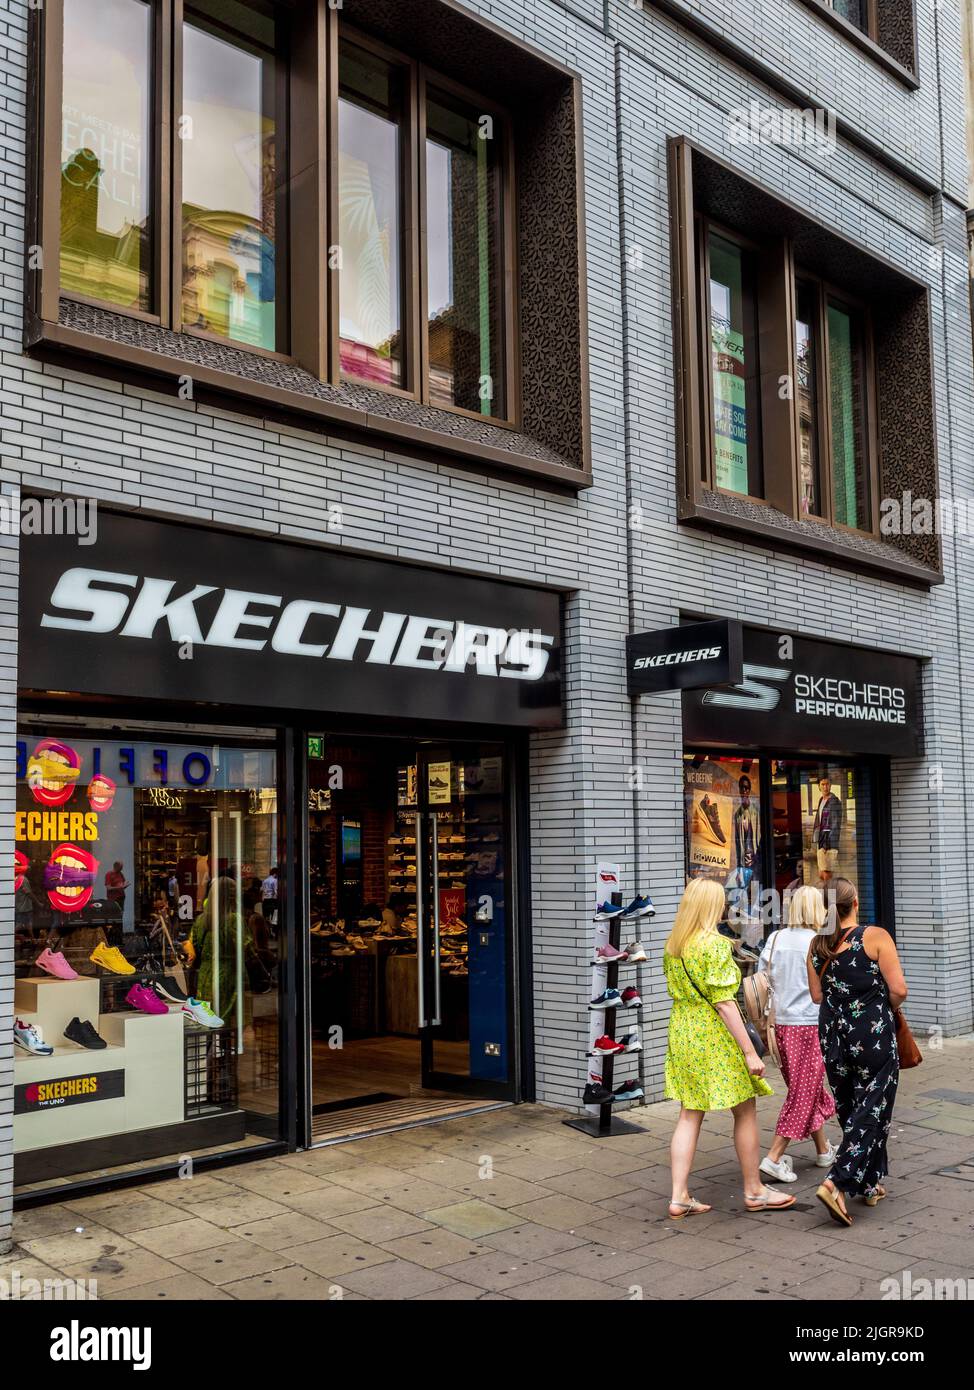 Magasin Skechers sur Oxford Street à Londres. Skechers est une société multinationale américaine de chaussures fondée en 1992. Banque D'Images